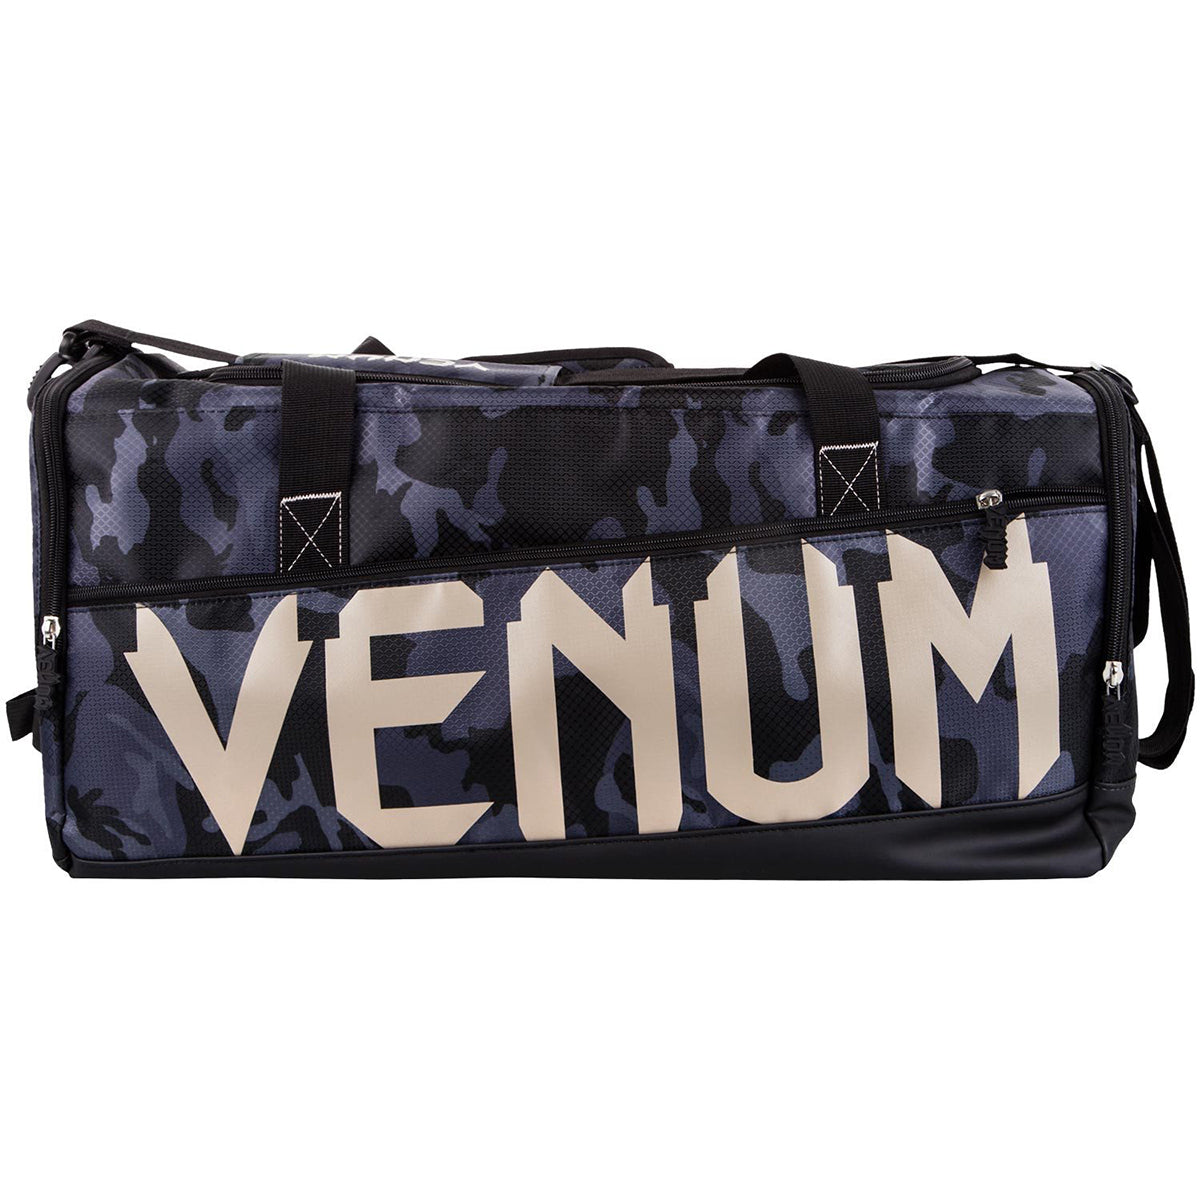 Venum Sparring Sport Equipment Duffel Bag - Dark Camo Venum